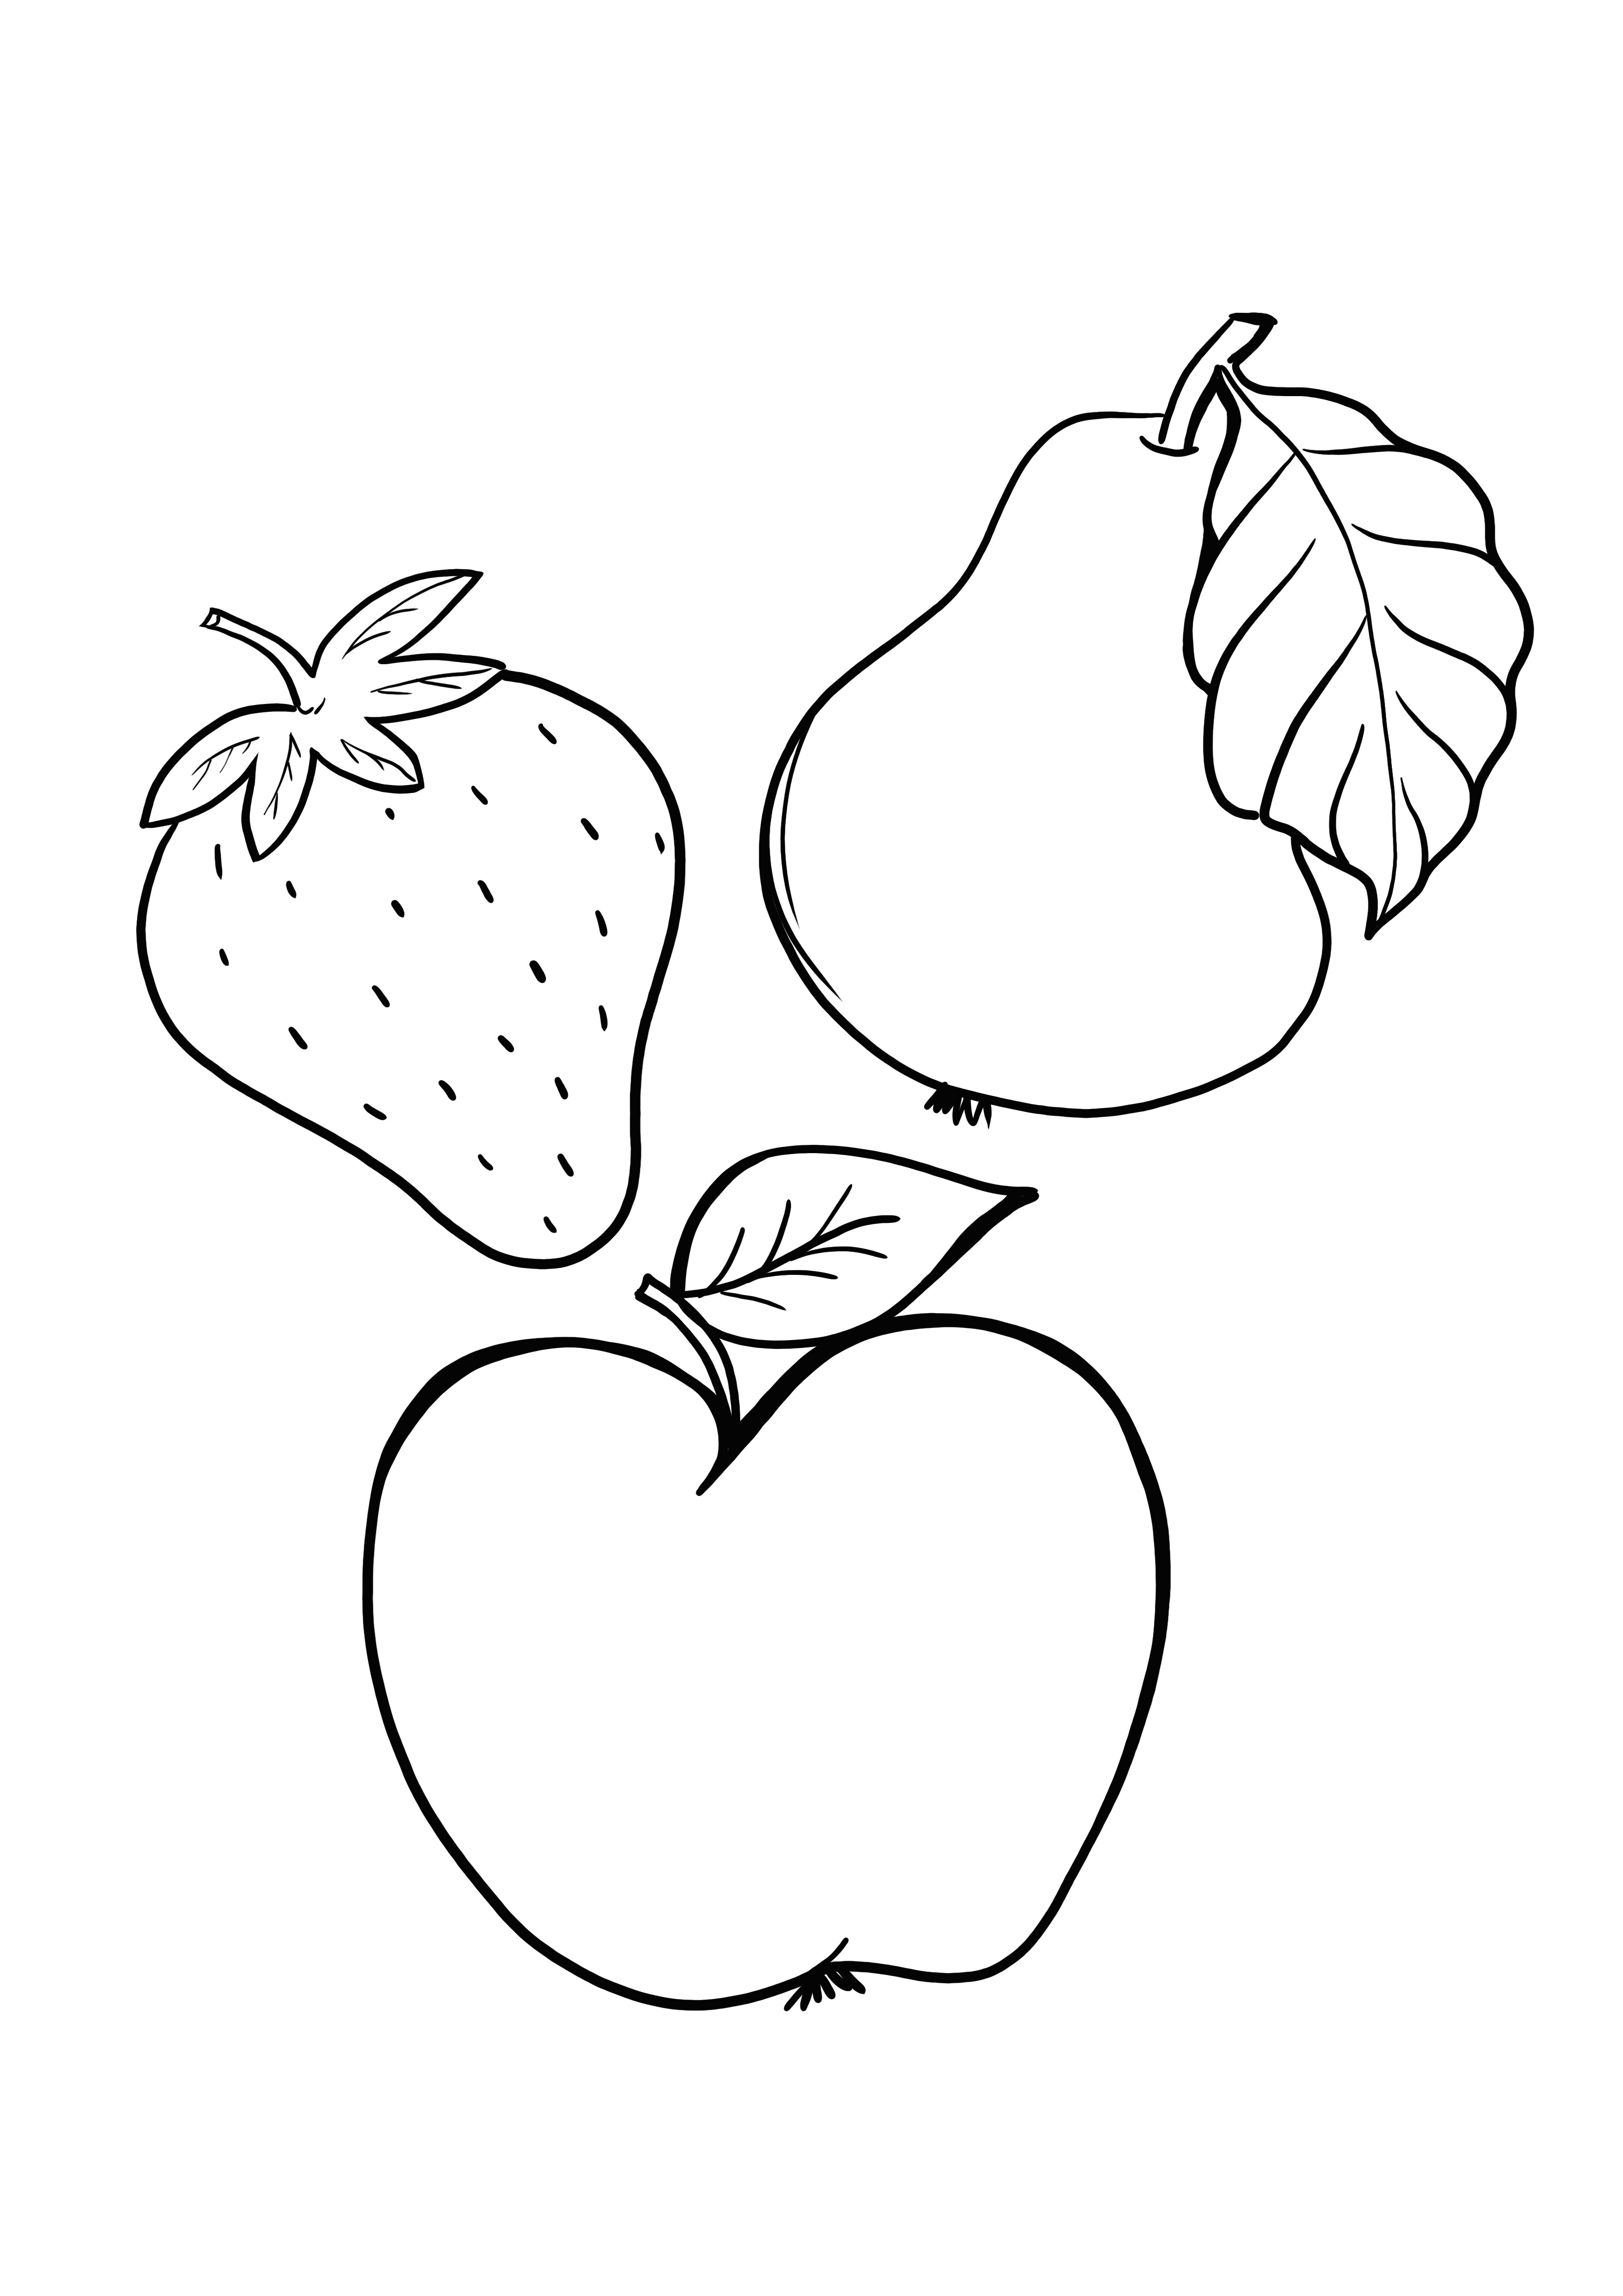 gruszka-jabłko-truskawka do wydrukowania za darmo